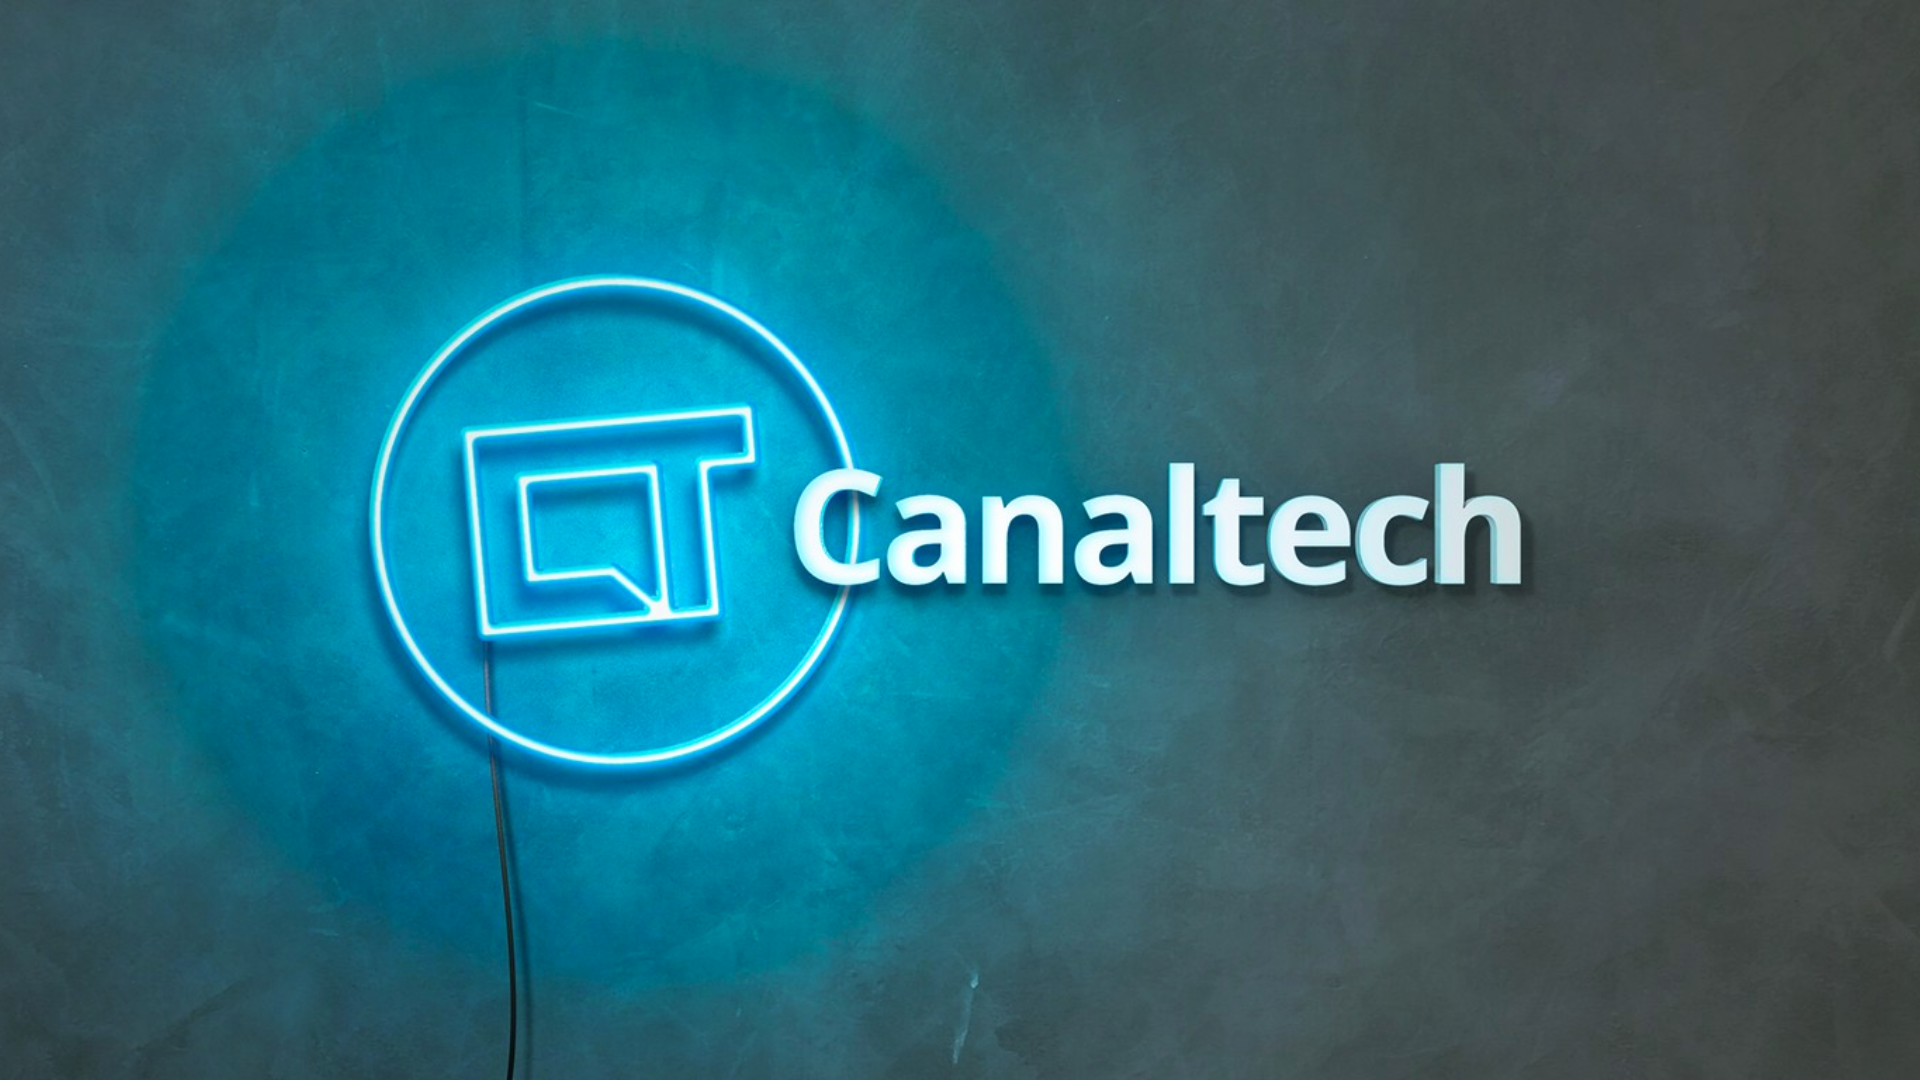 Canaltech é o novo parceiro de conteúdo do portal iG